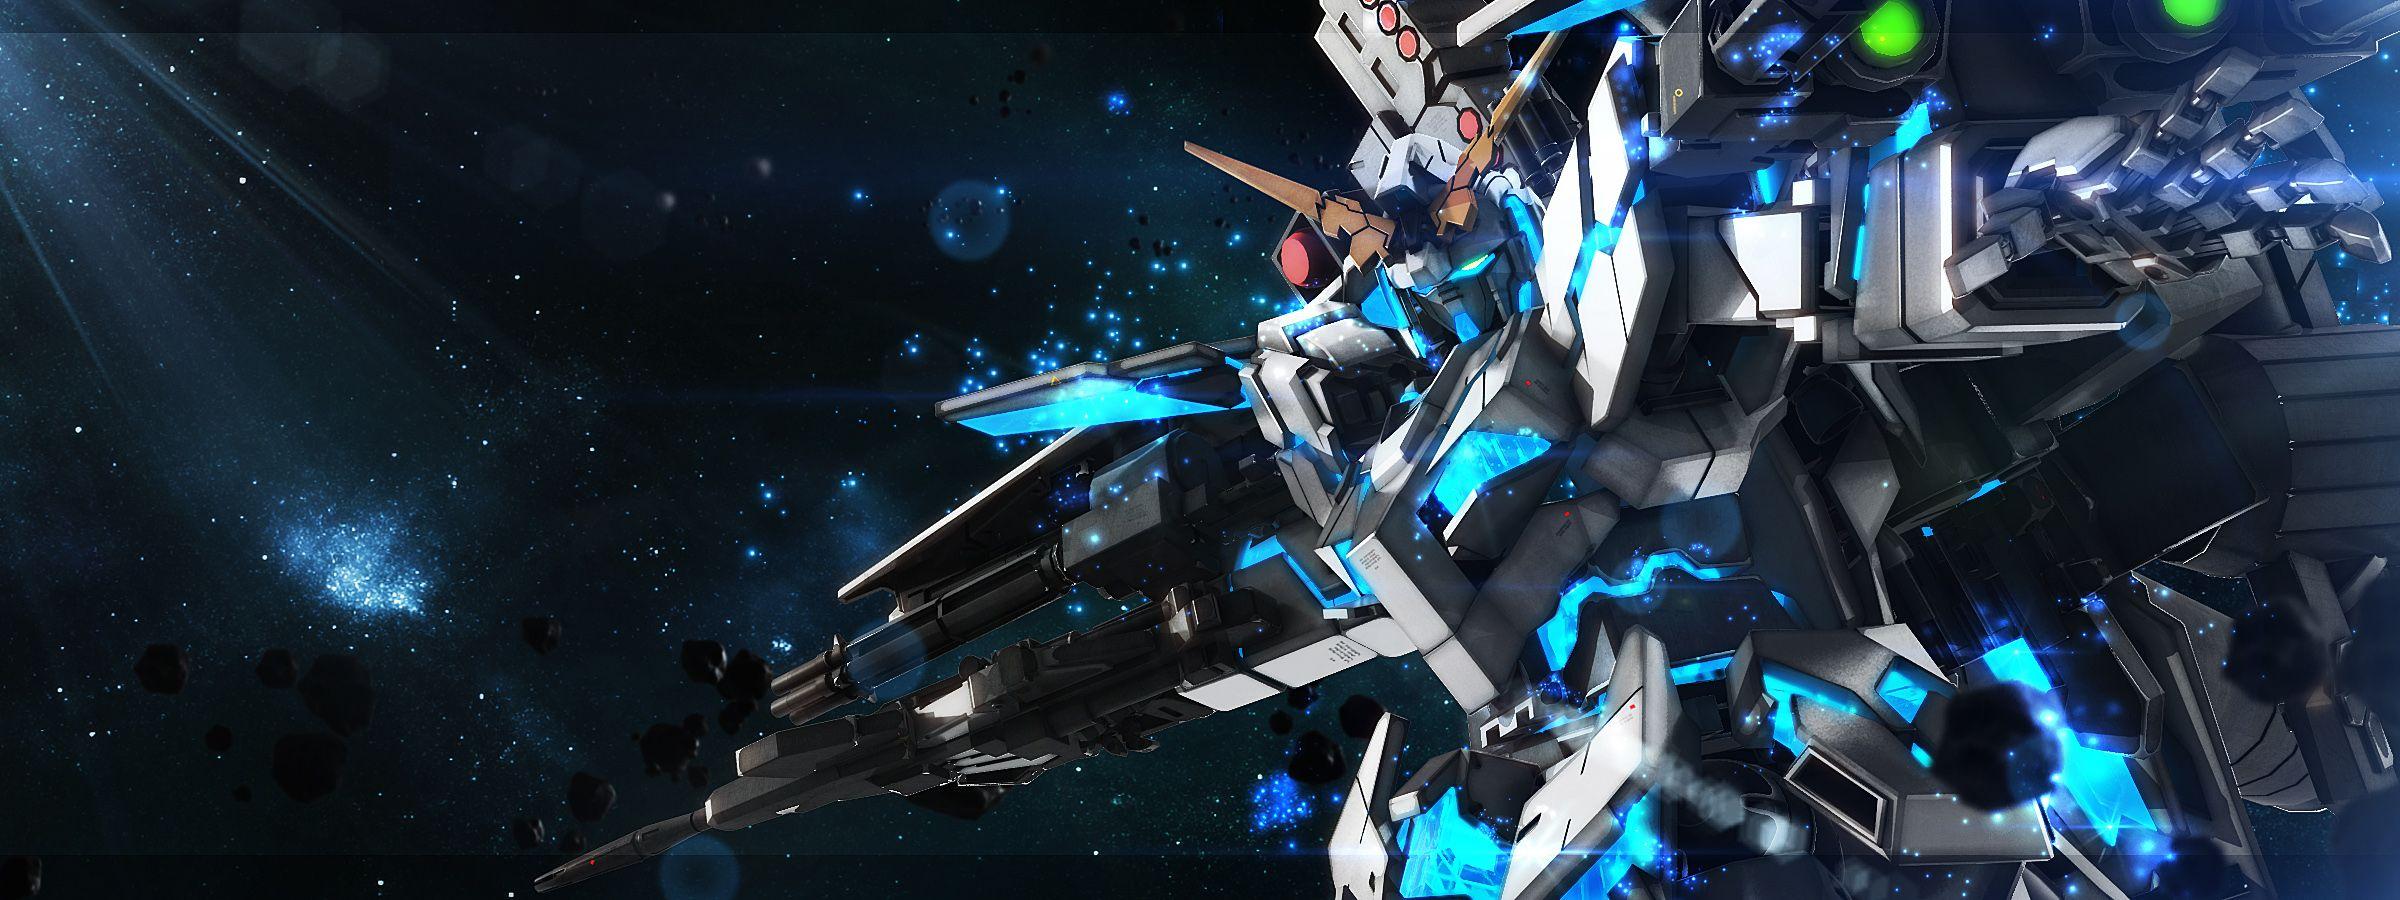 Gundam Aerial 1080P, 2K, 4K, 5K HD wallpapers free download | Wallpaper  Flare